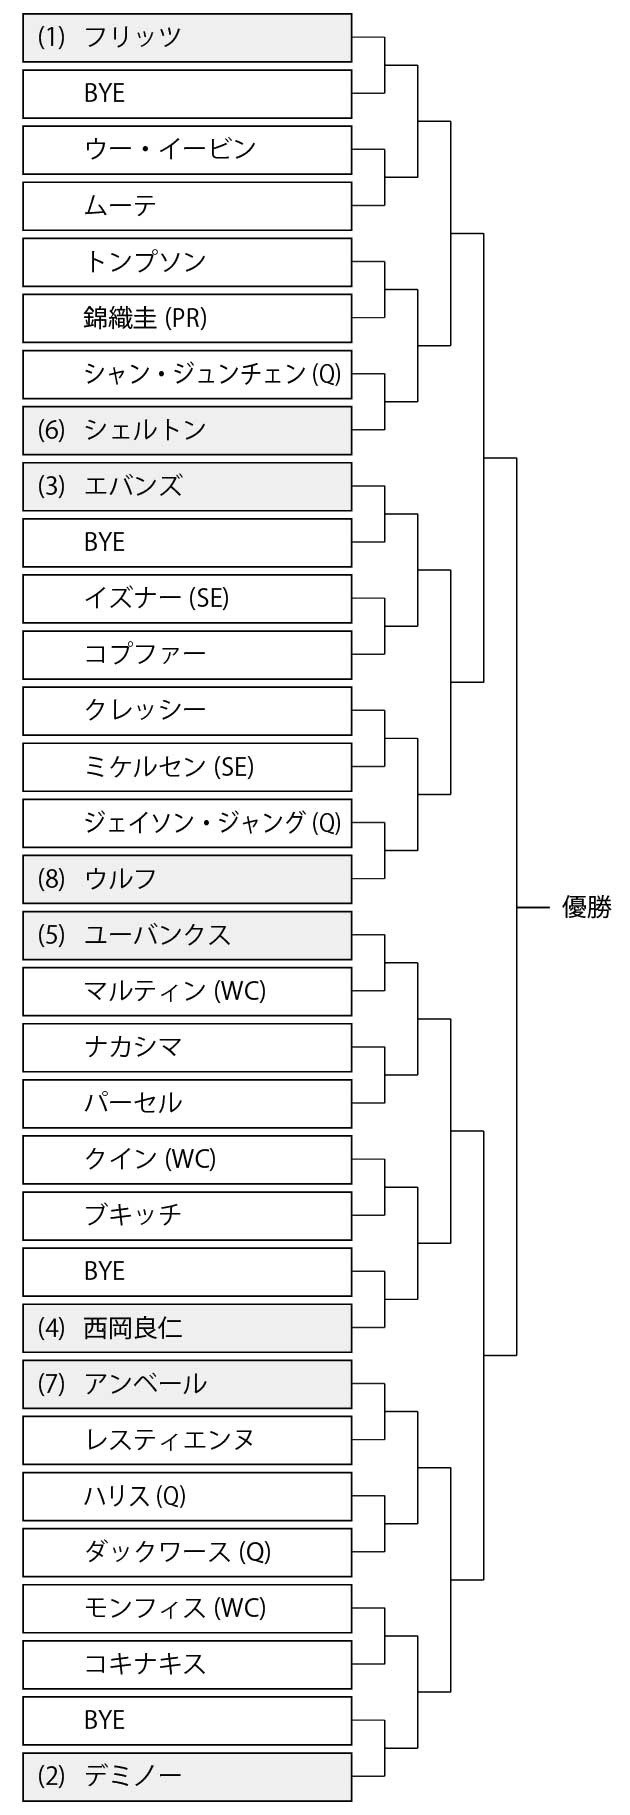 アトランタ・オープン2023 男子シングルスの日本語版ドロー(トーナメント表)